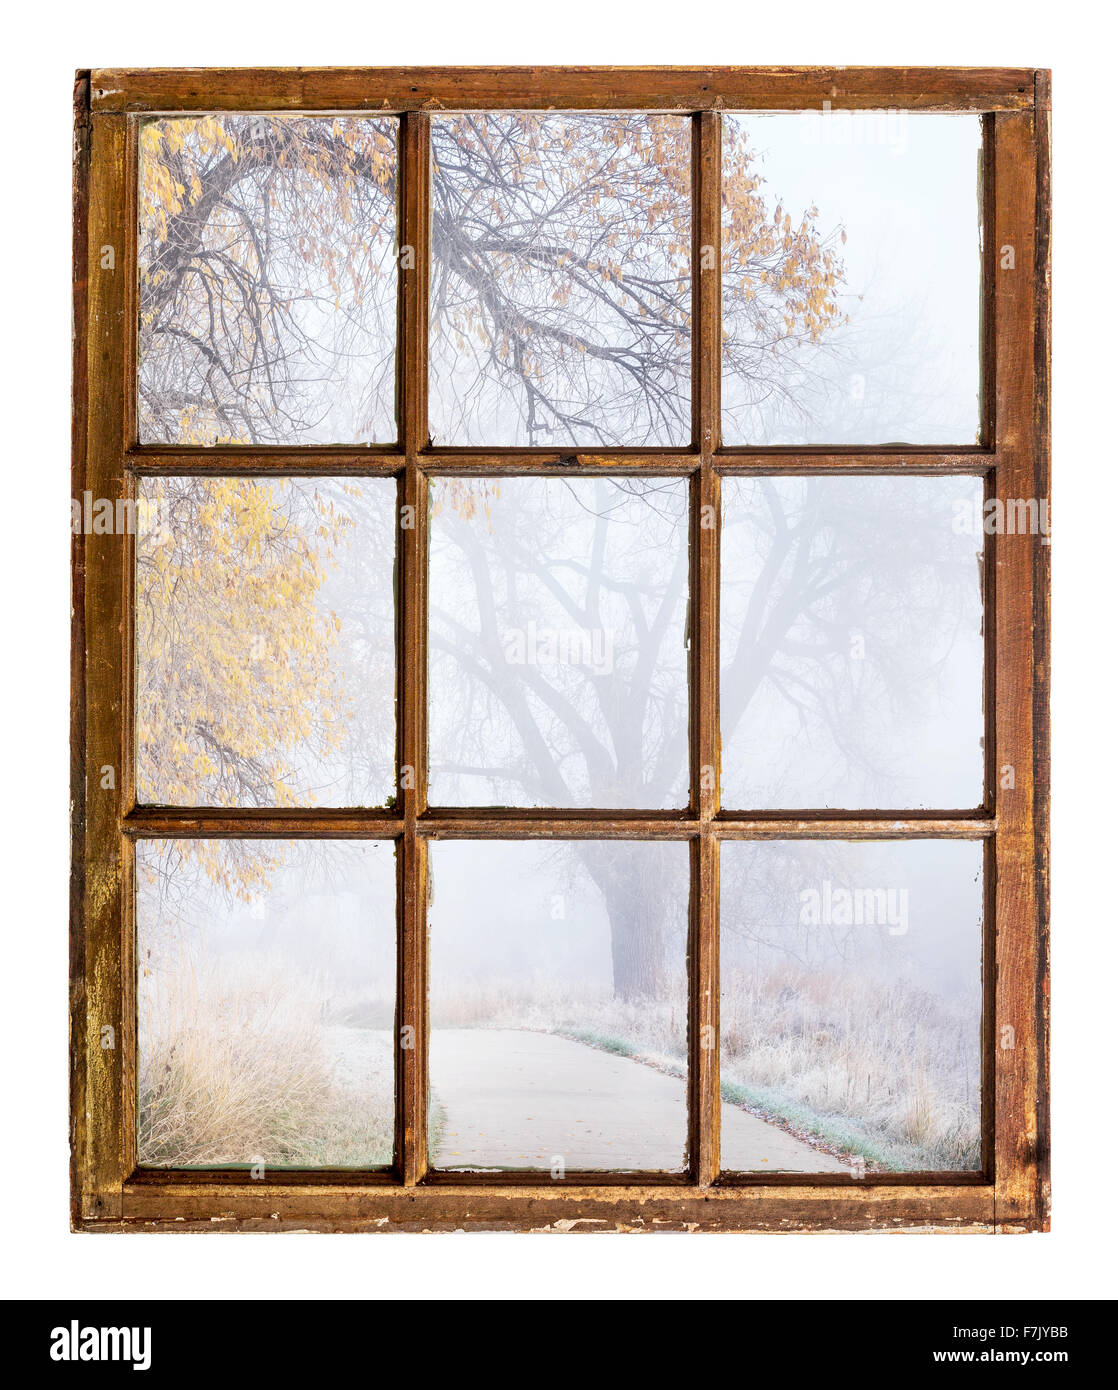 Nostalgico autunno scena, foggy park trail - una vista astratta da un'annata finestra ad anta Foto Stock